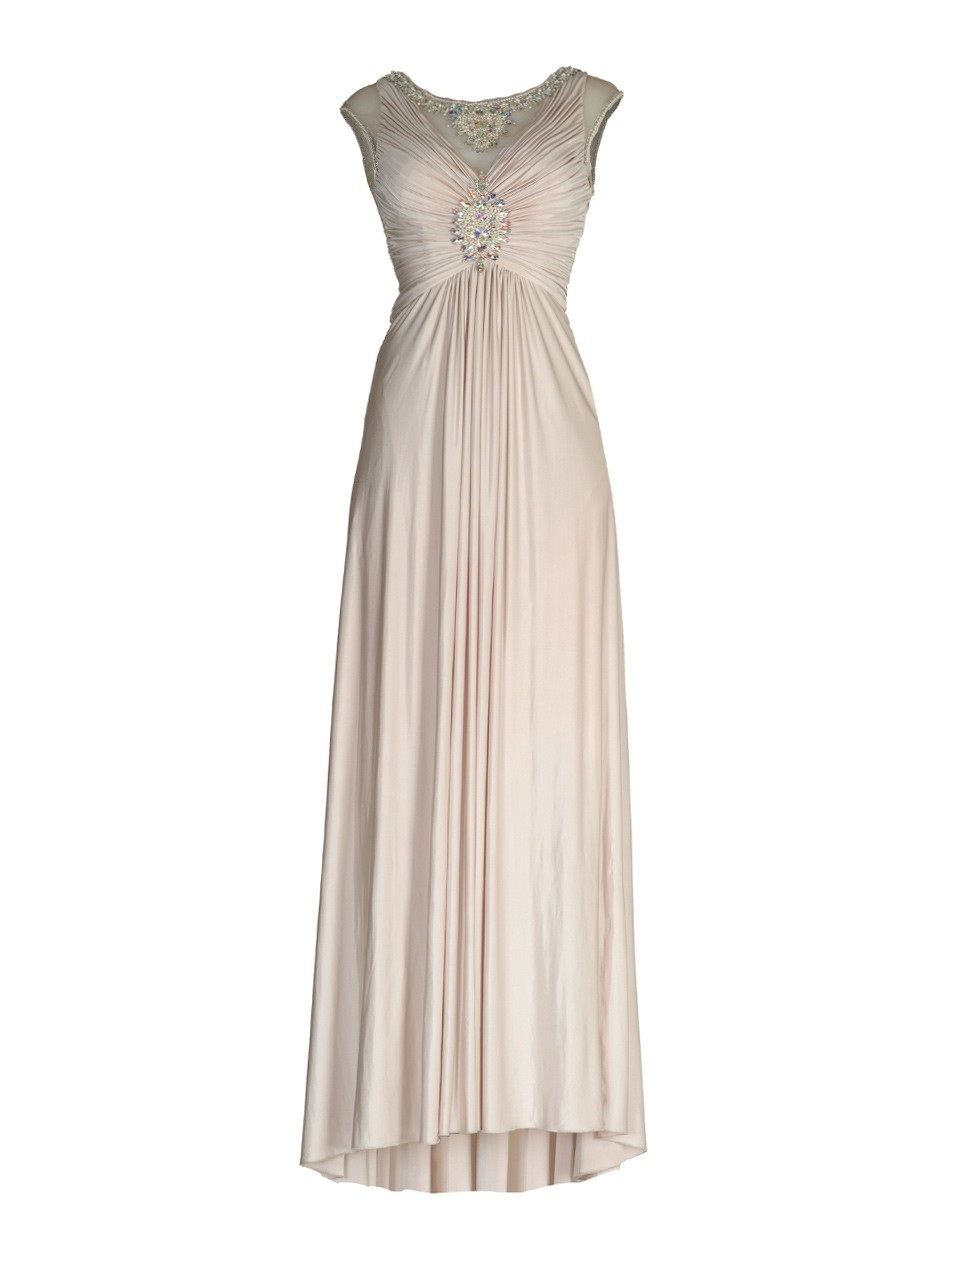 Aftershock Torraine Jewel Embellished Maxi Dress, Aftershock wedding dress, affordable maxi wedding dress, Alt Text